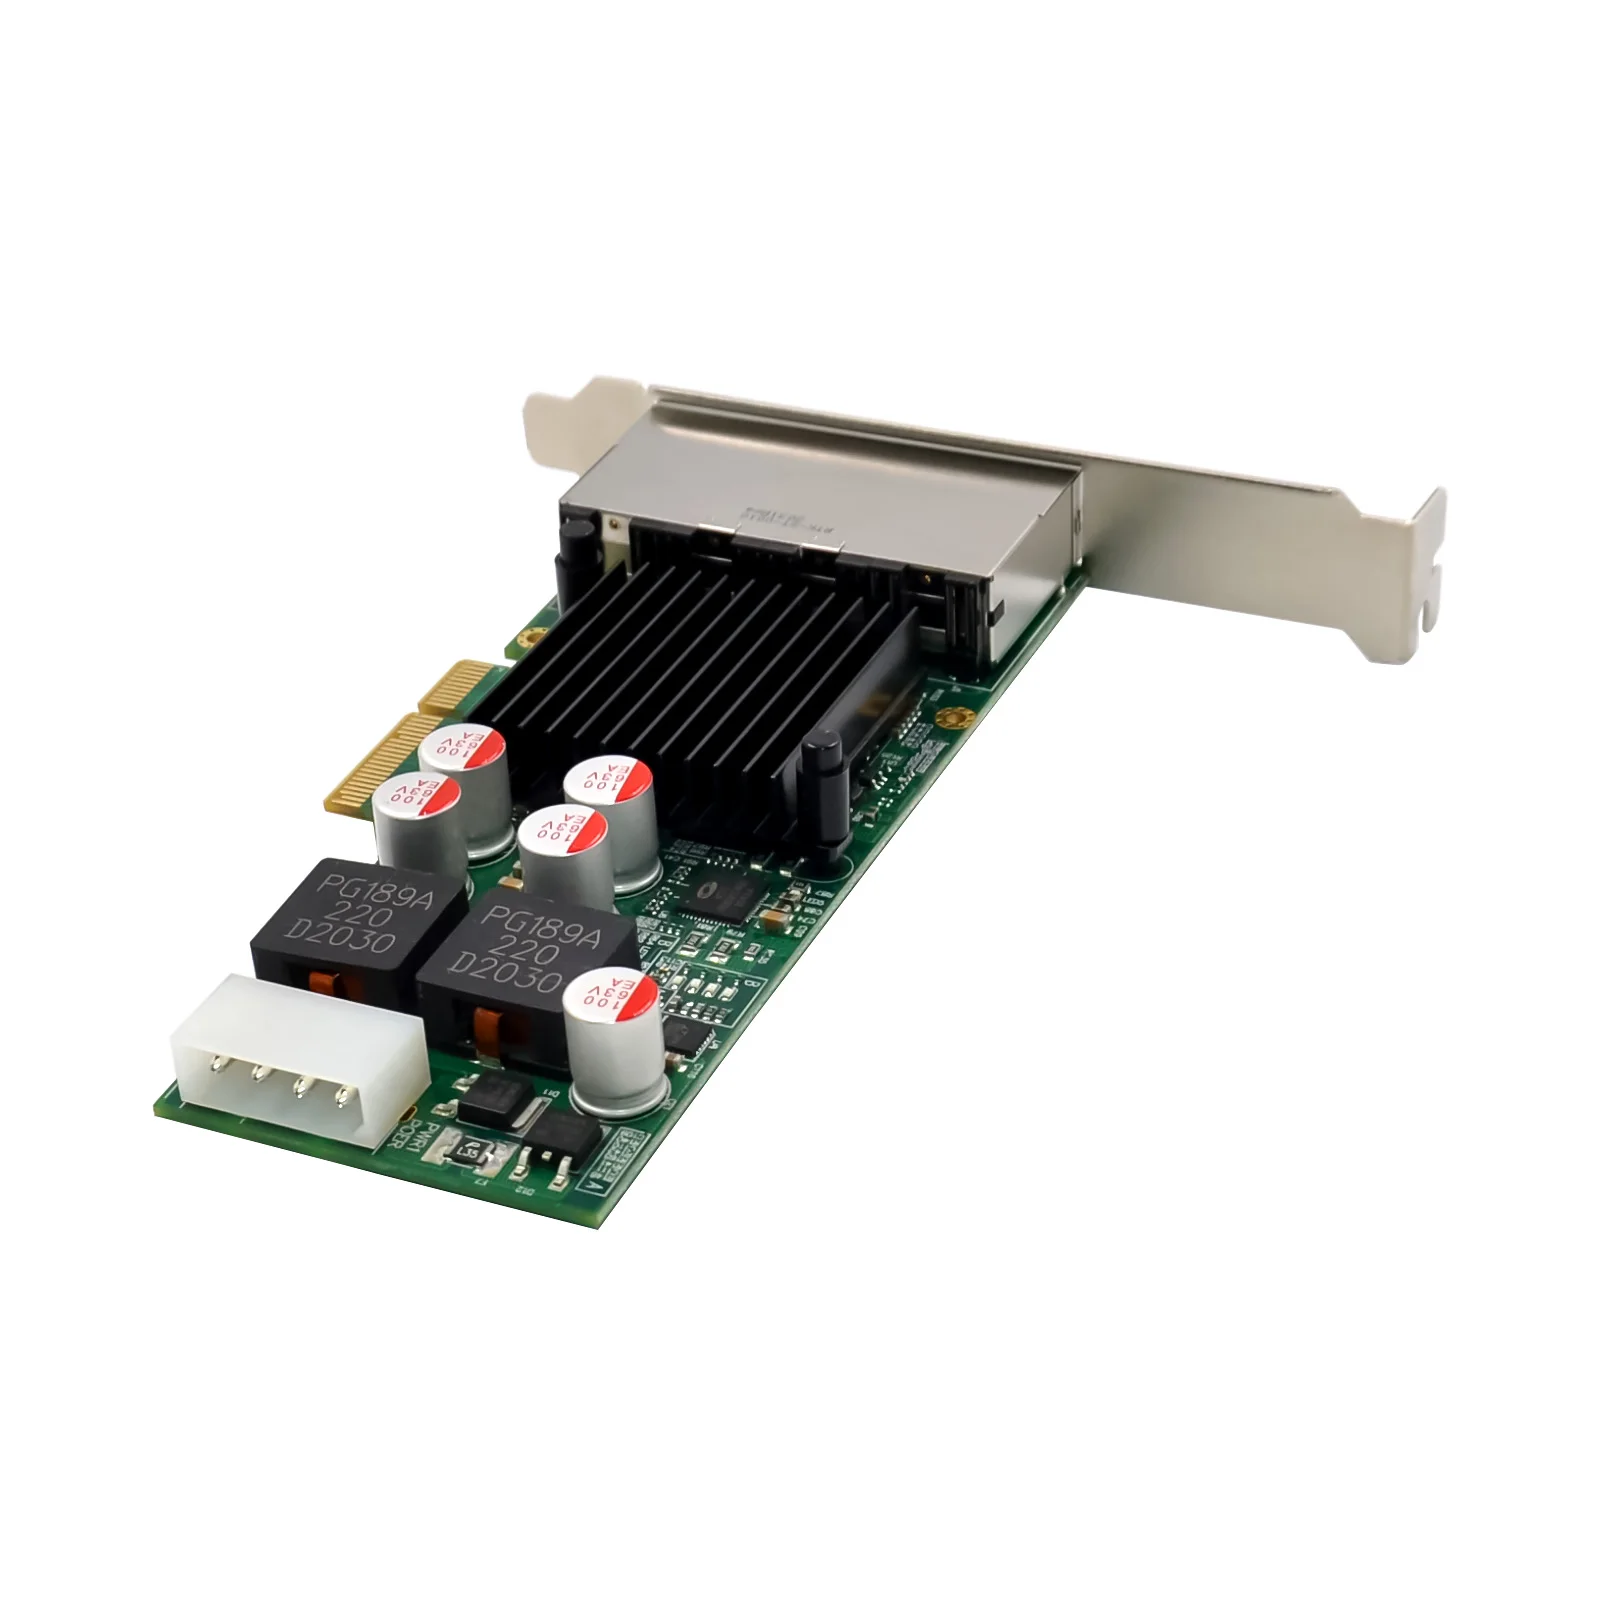 Intel I350 Chip PCIE X4 RJ45 Quad 4 Port Industrial Network Card PoE Vision Frame Grabber NICs Gigabit Ethernet Lan 1000Mbps usb wifi adapter